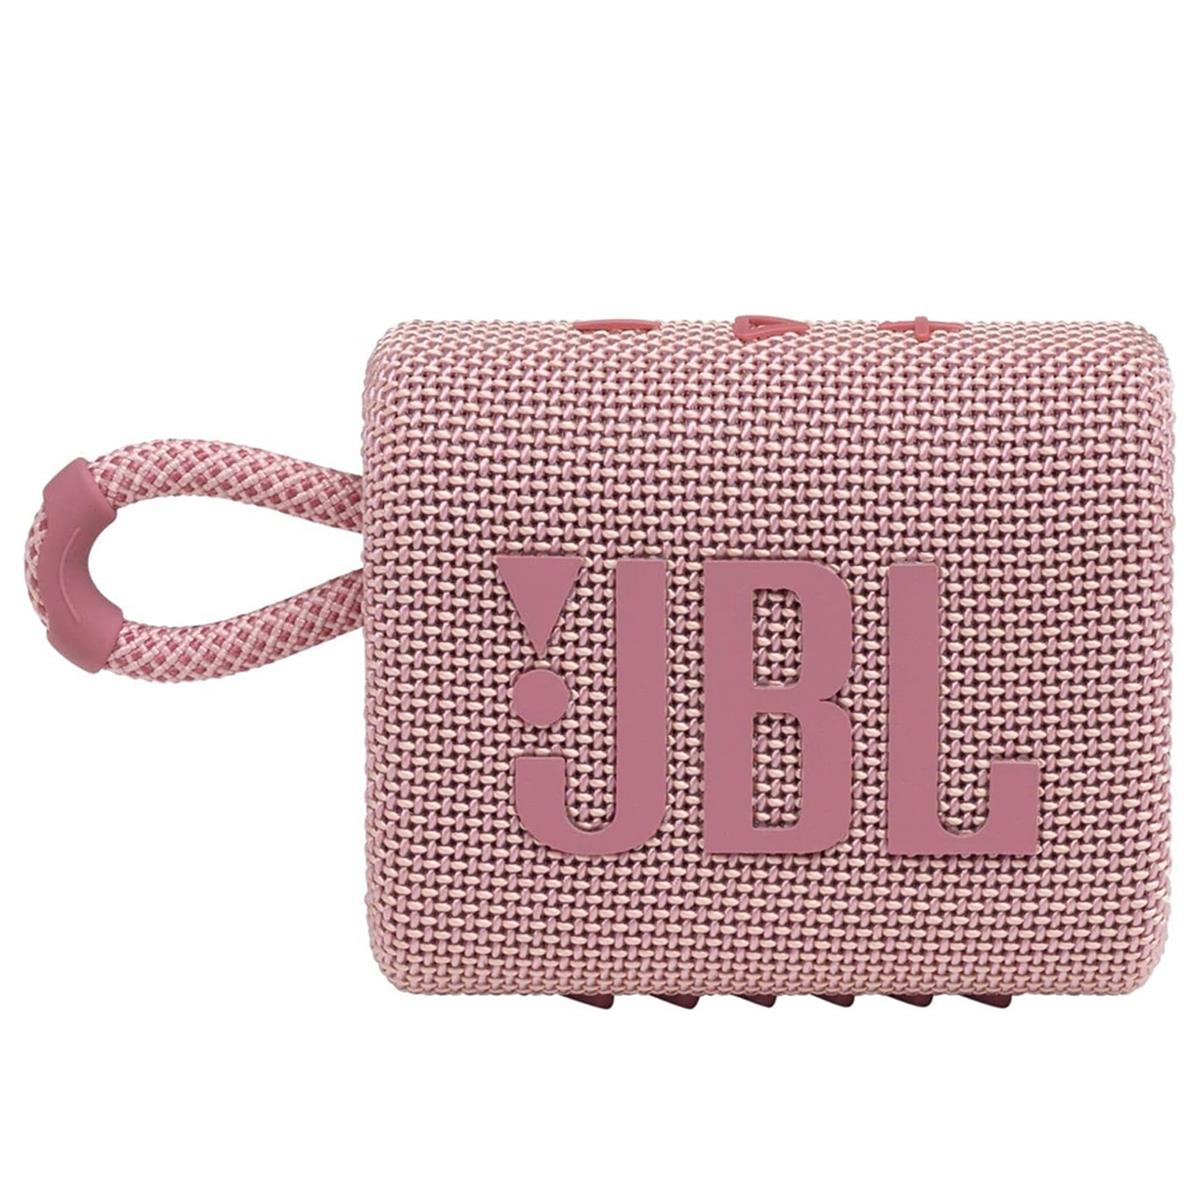 Image of JBL Go 3 Waterproof Portable Bluetooth Speaker Pink